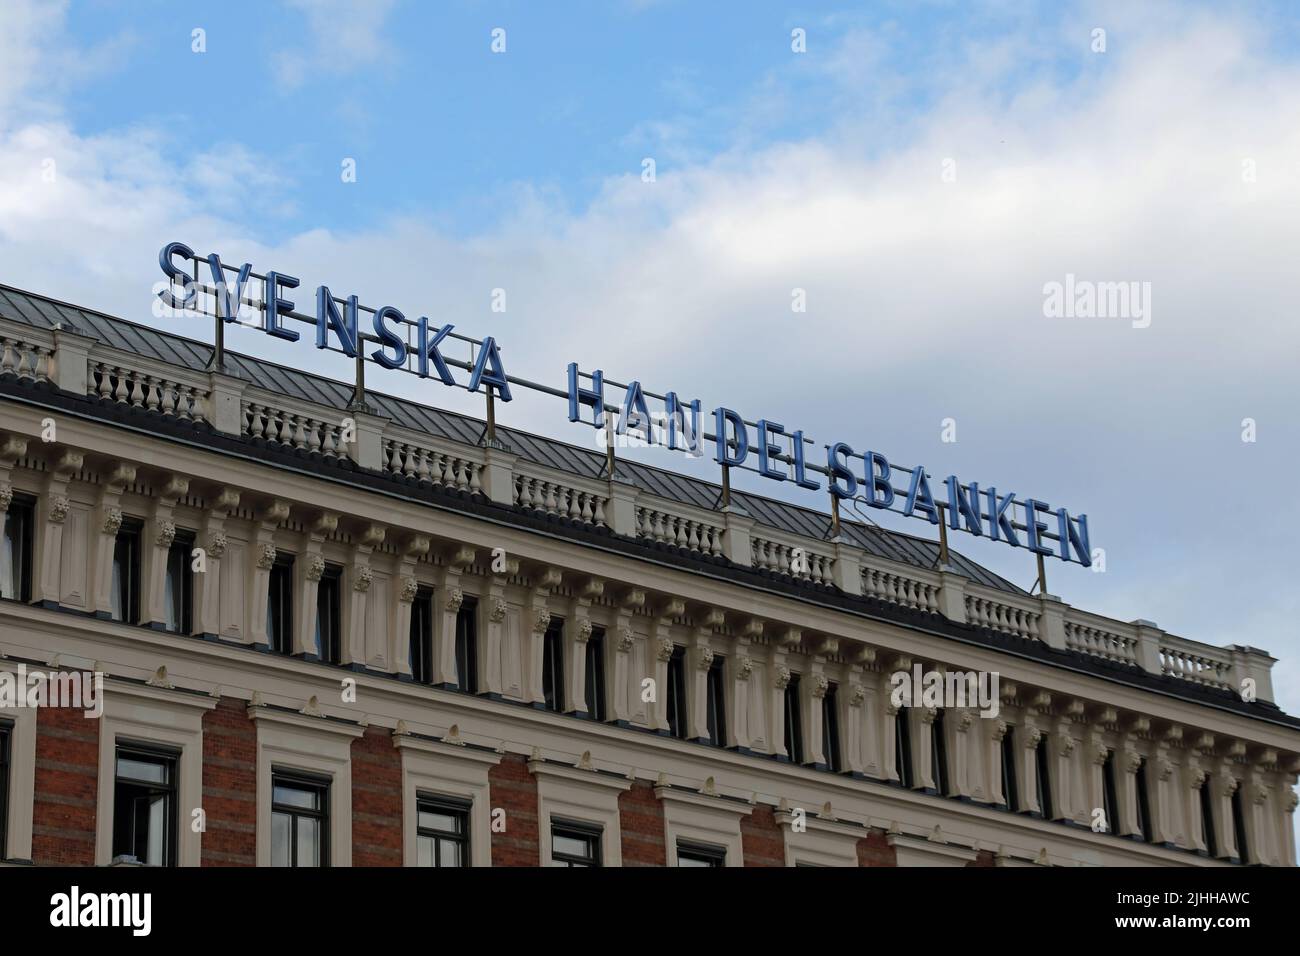 Svenska Handelsbanken in Stockholm Stock Photo